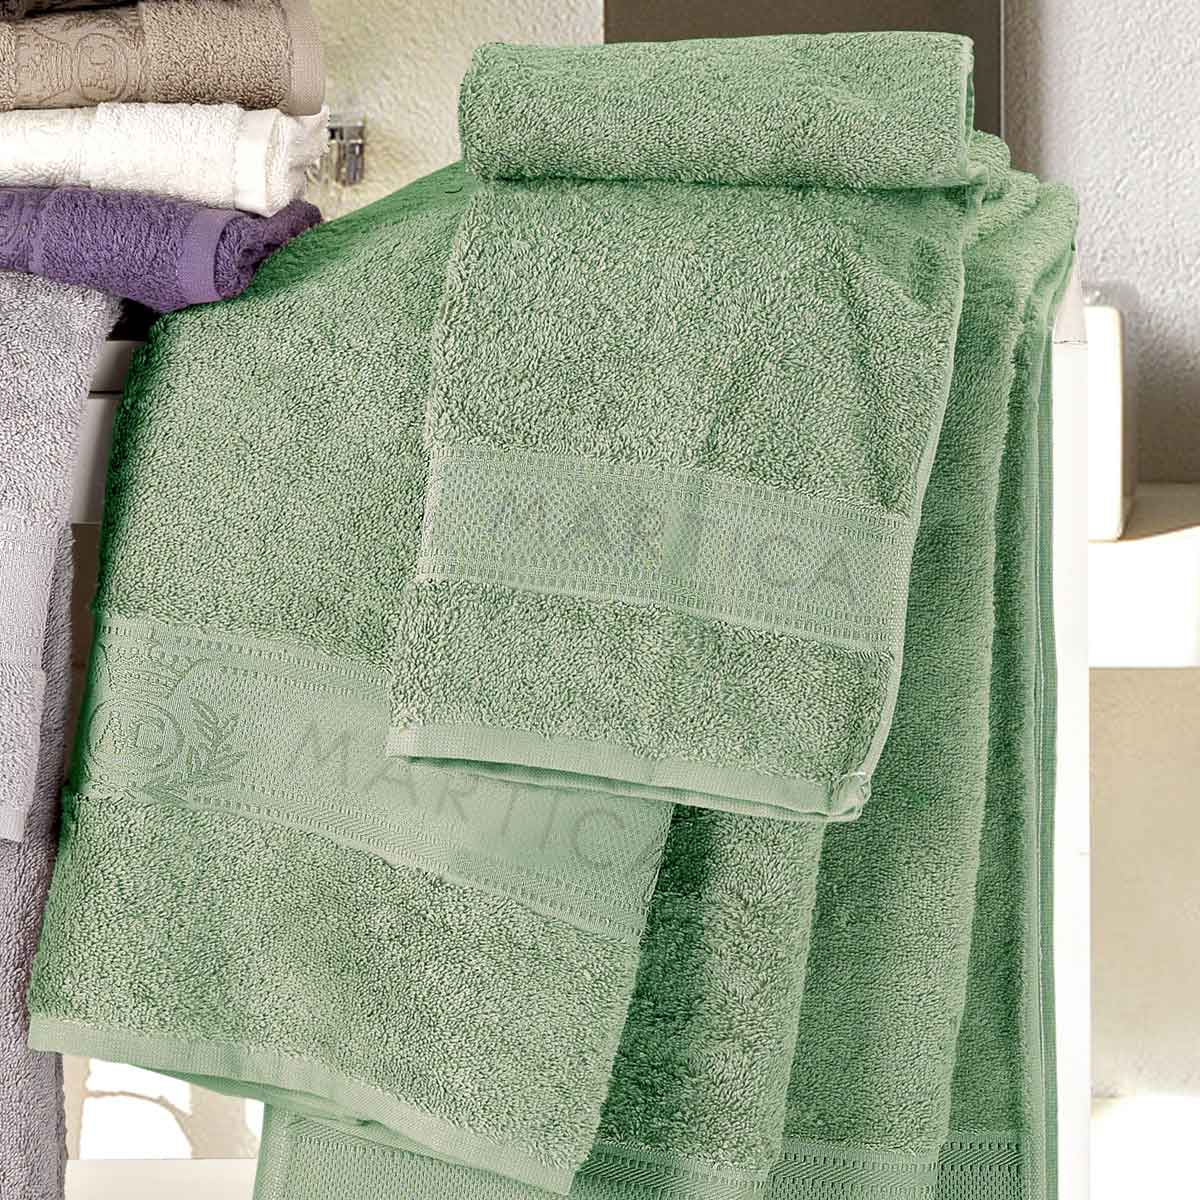 Coppia asciugamani da bagno in spugna di colore verde mare - Idrospugna